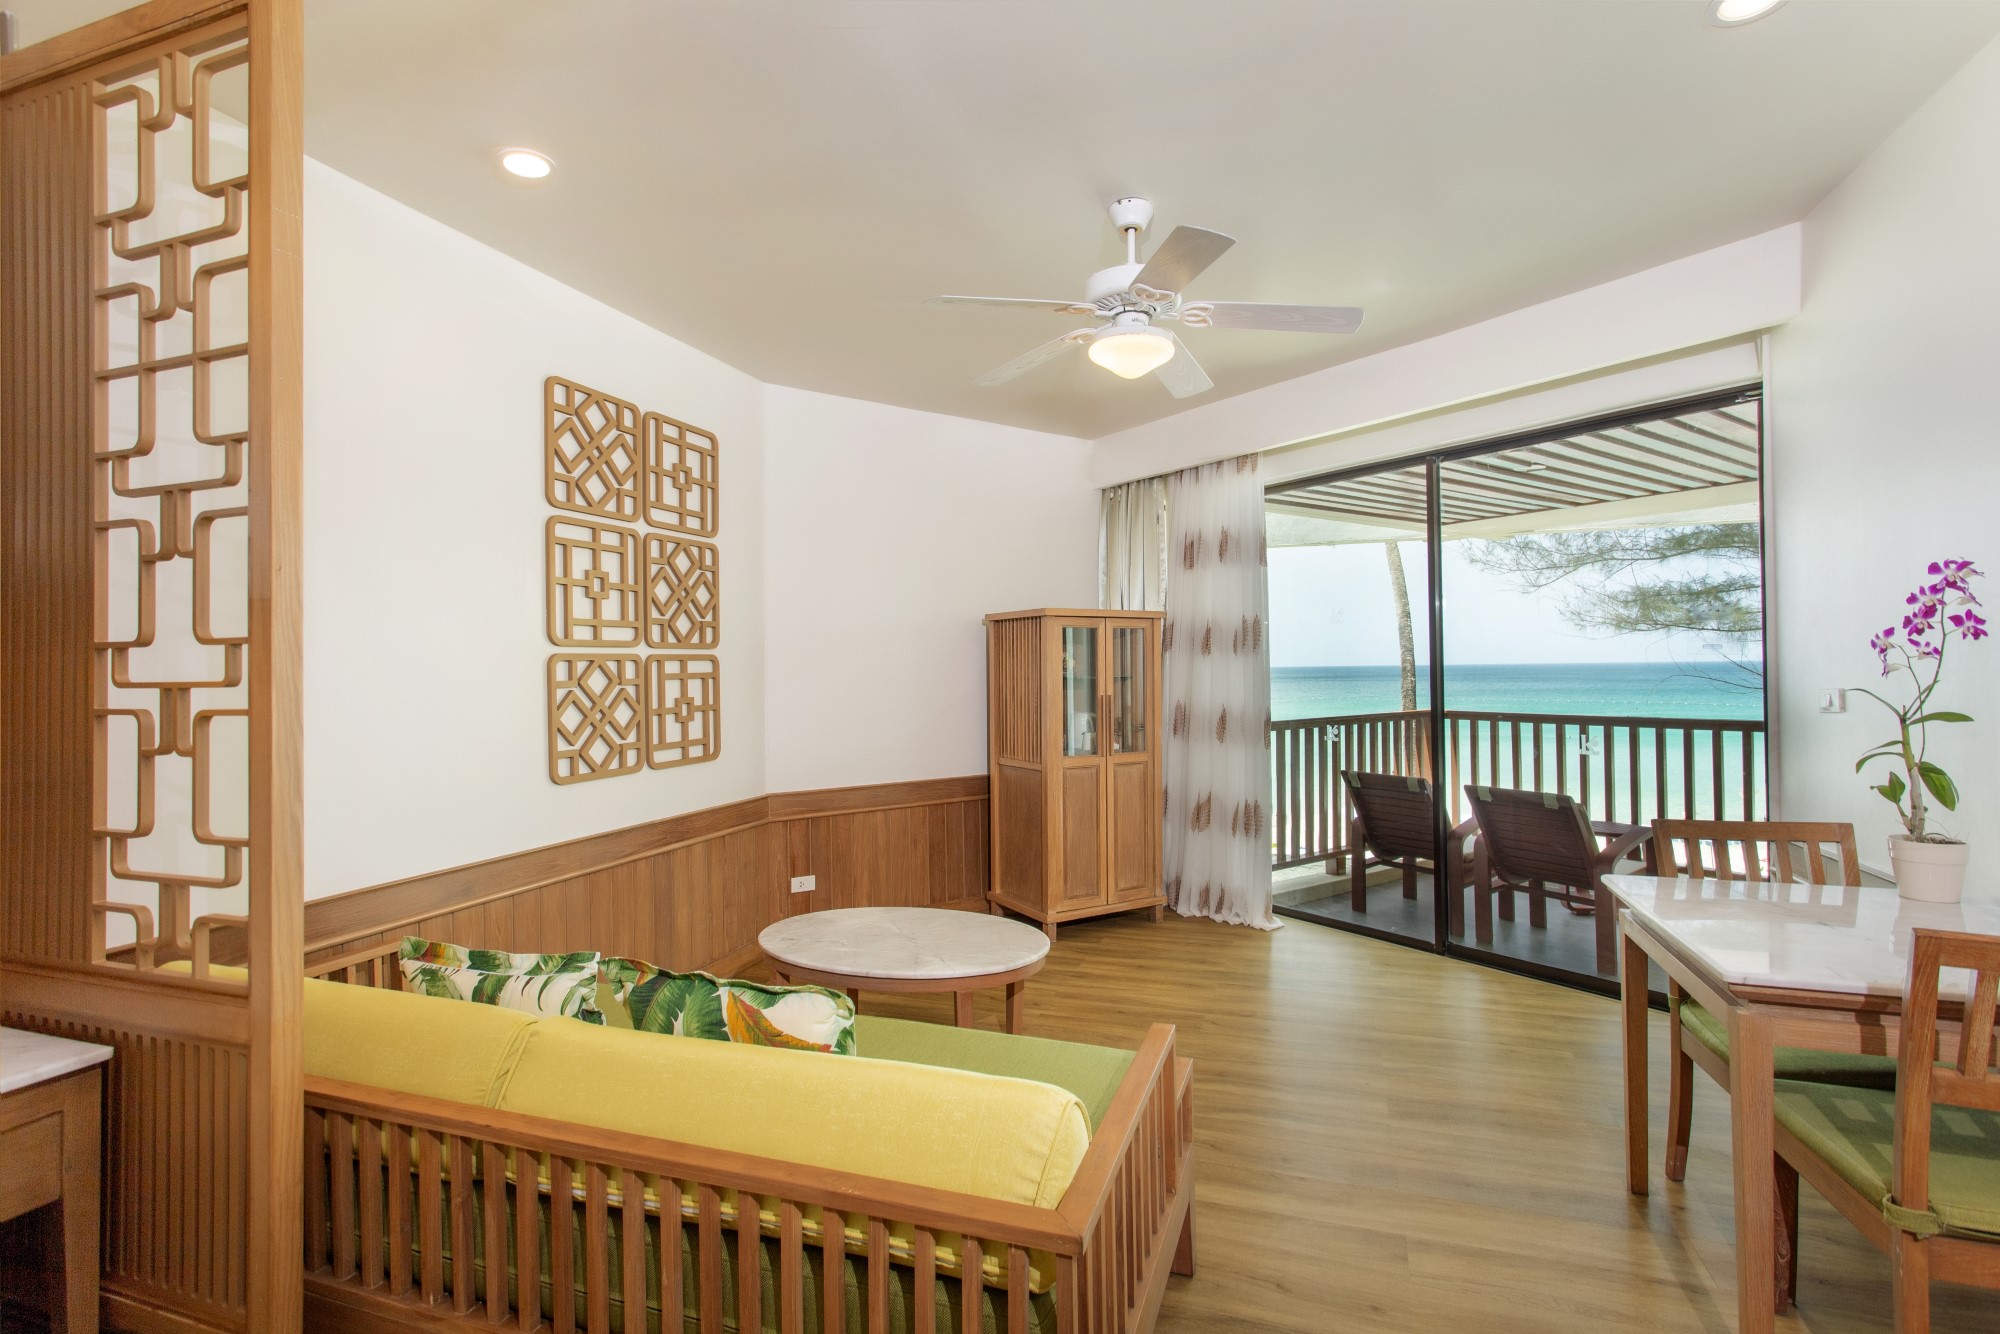 Accommodations | Katathani Phuket Beach Resort